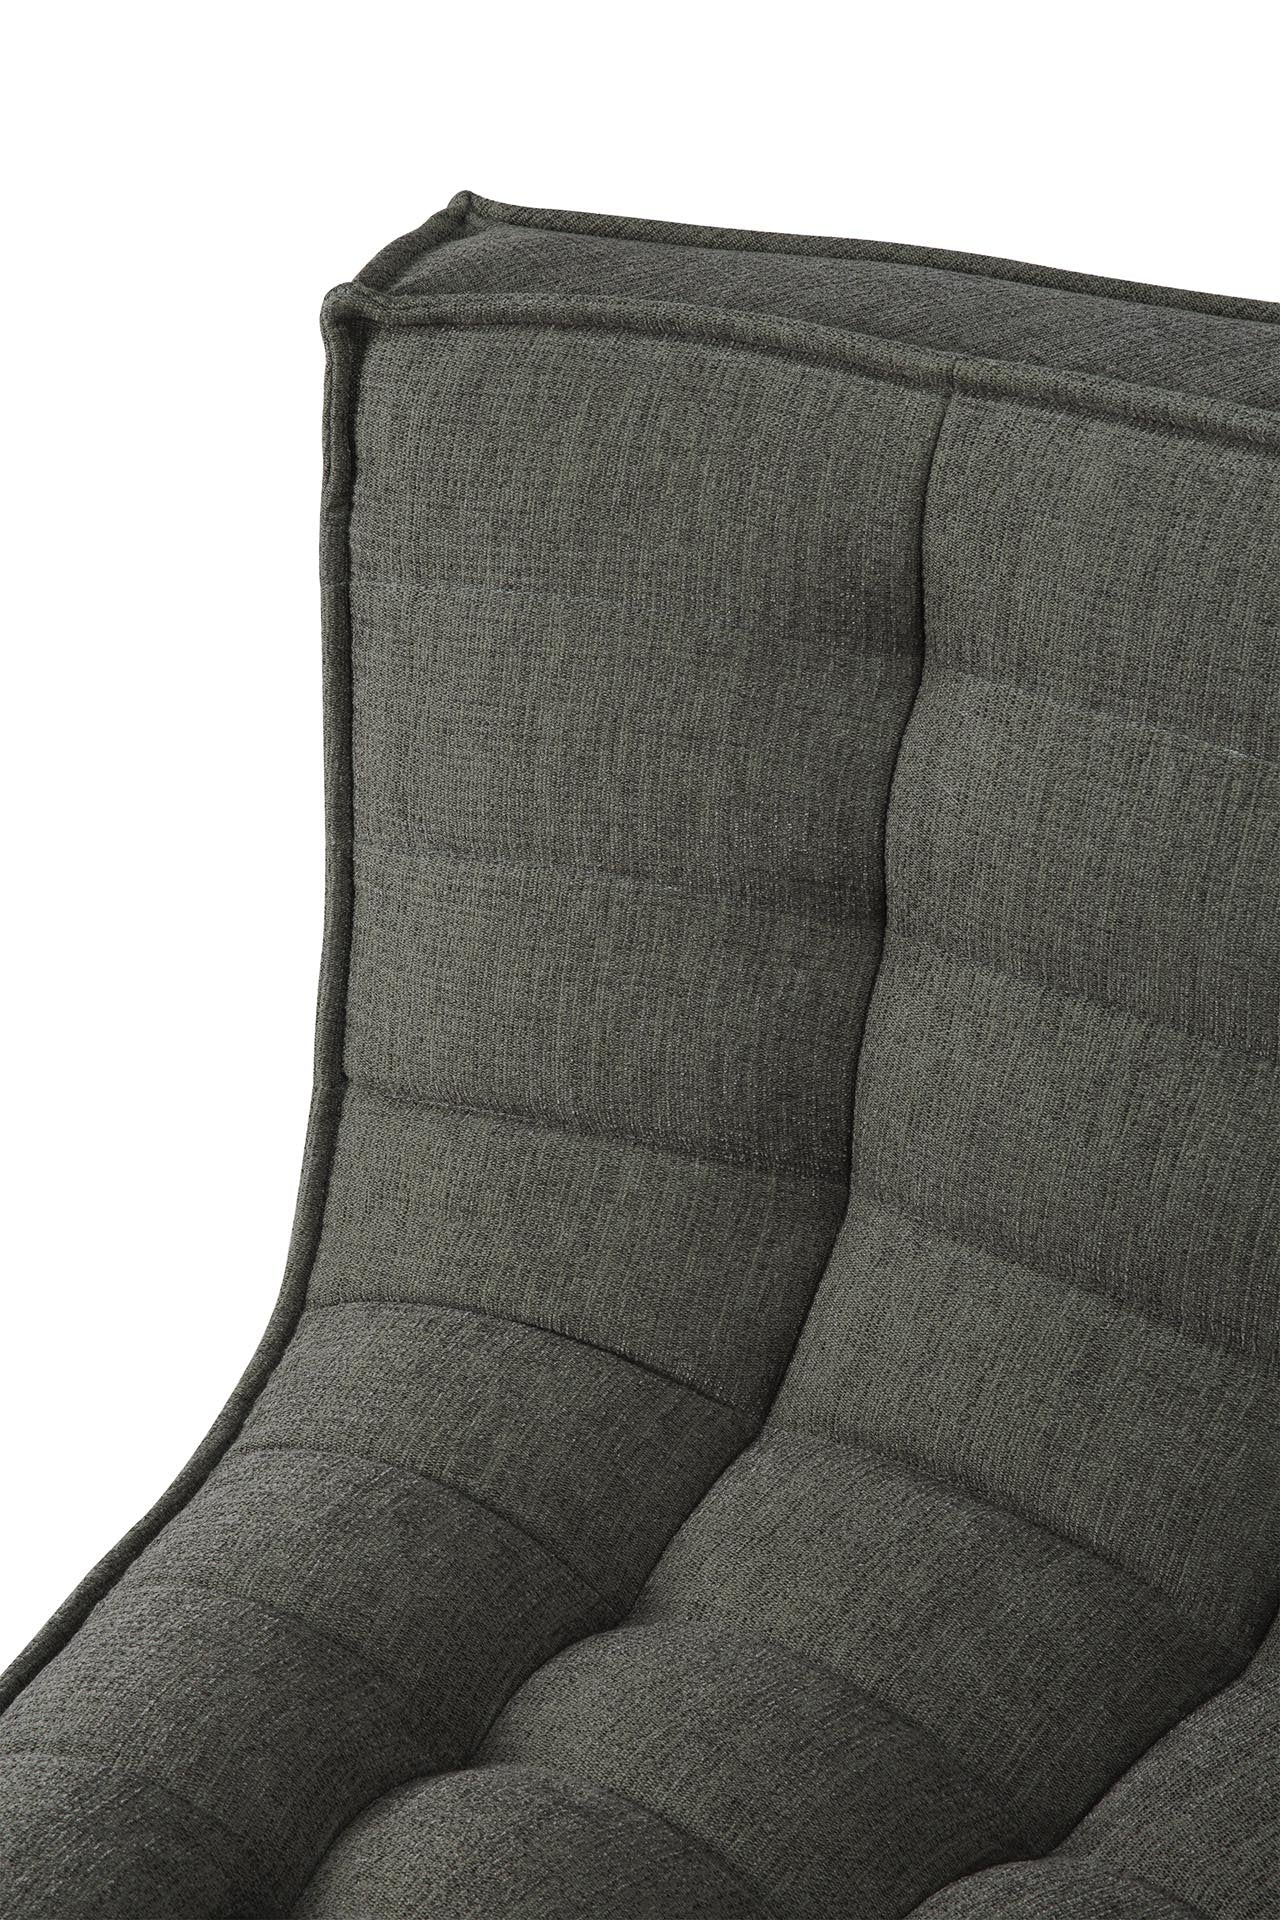 N701 Round Corner Eco Fabric Sofa, Moss